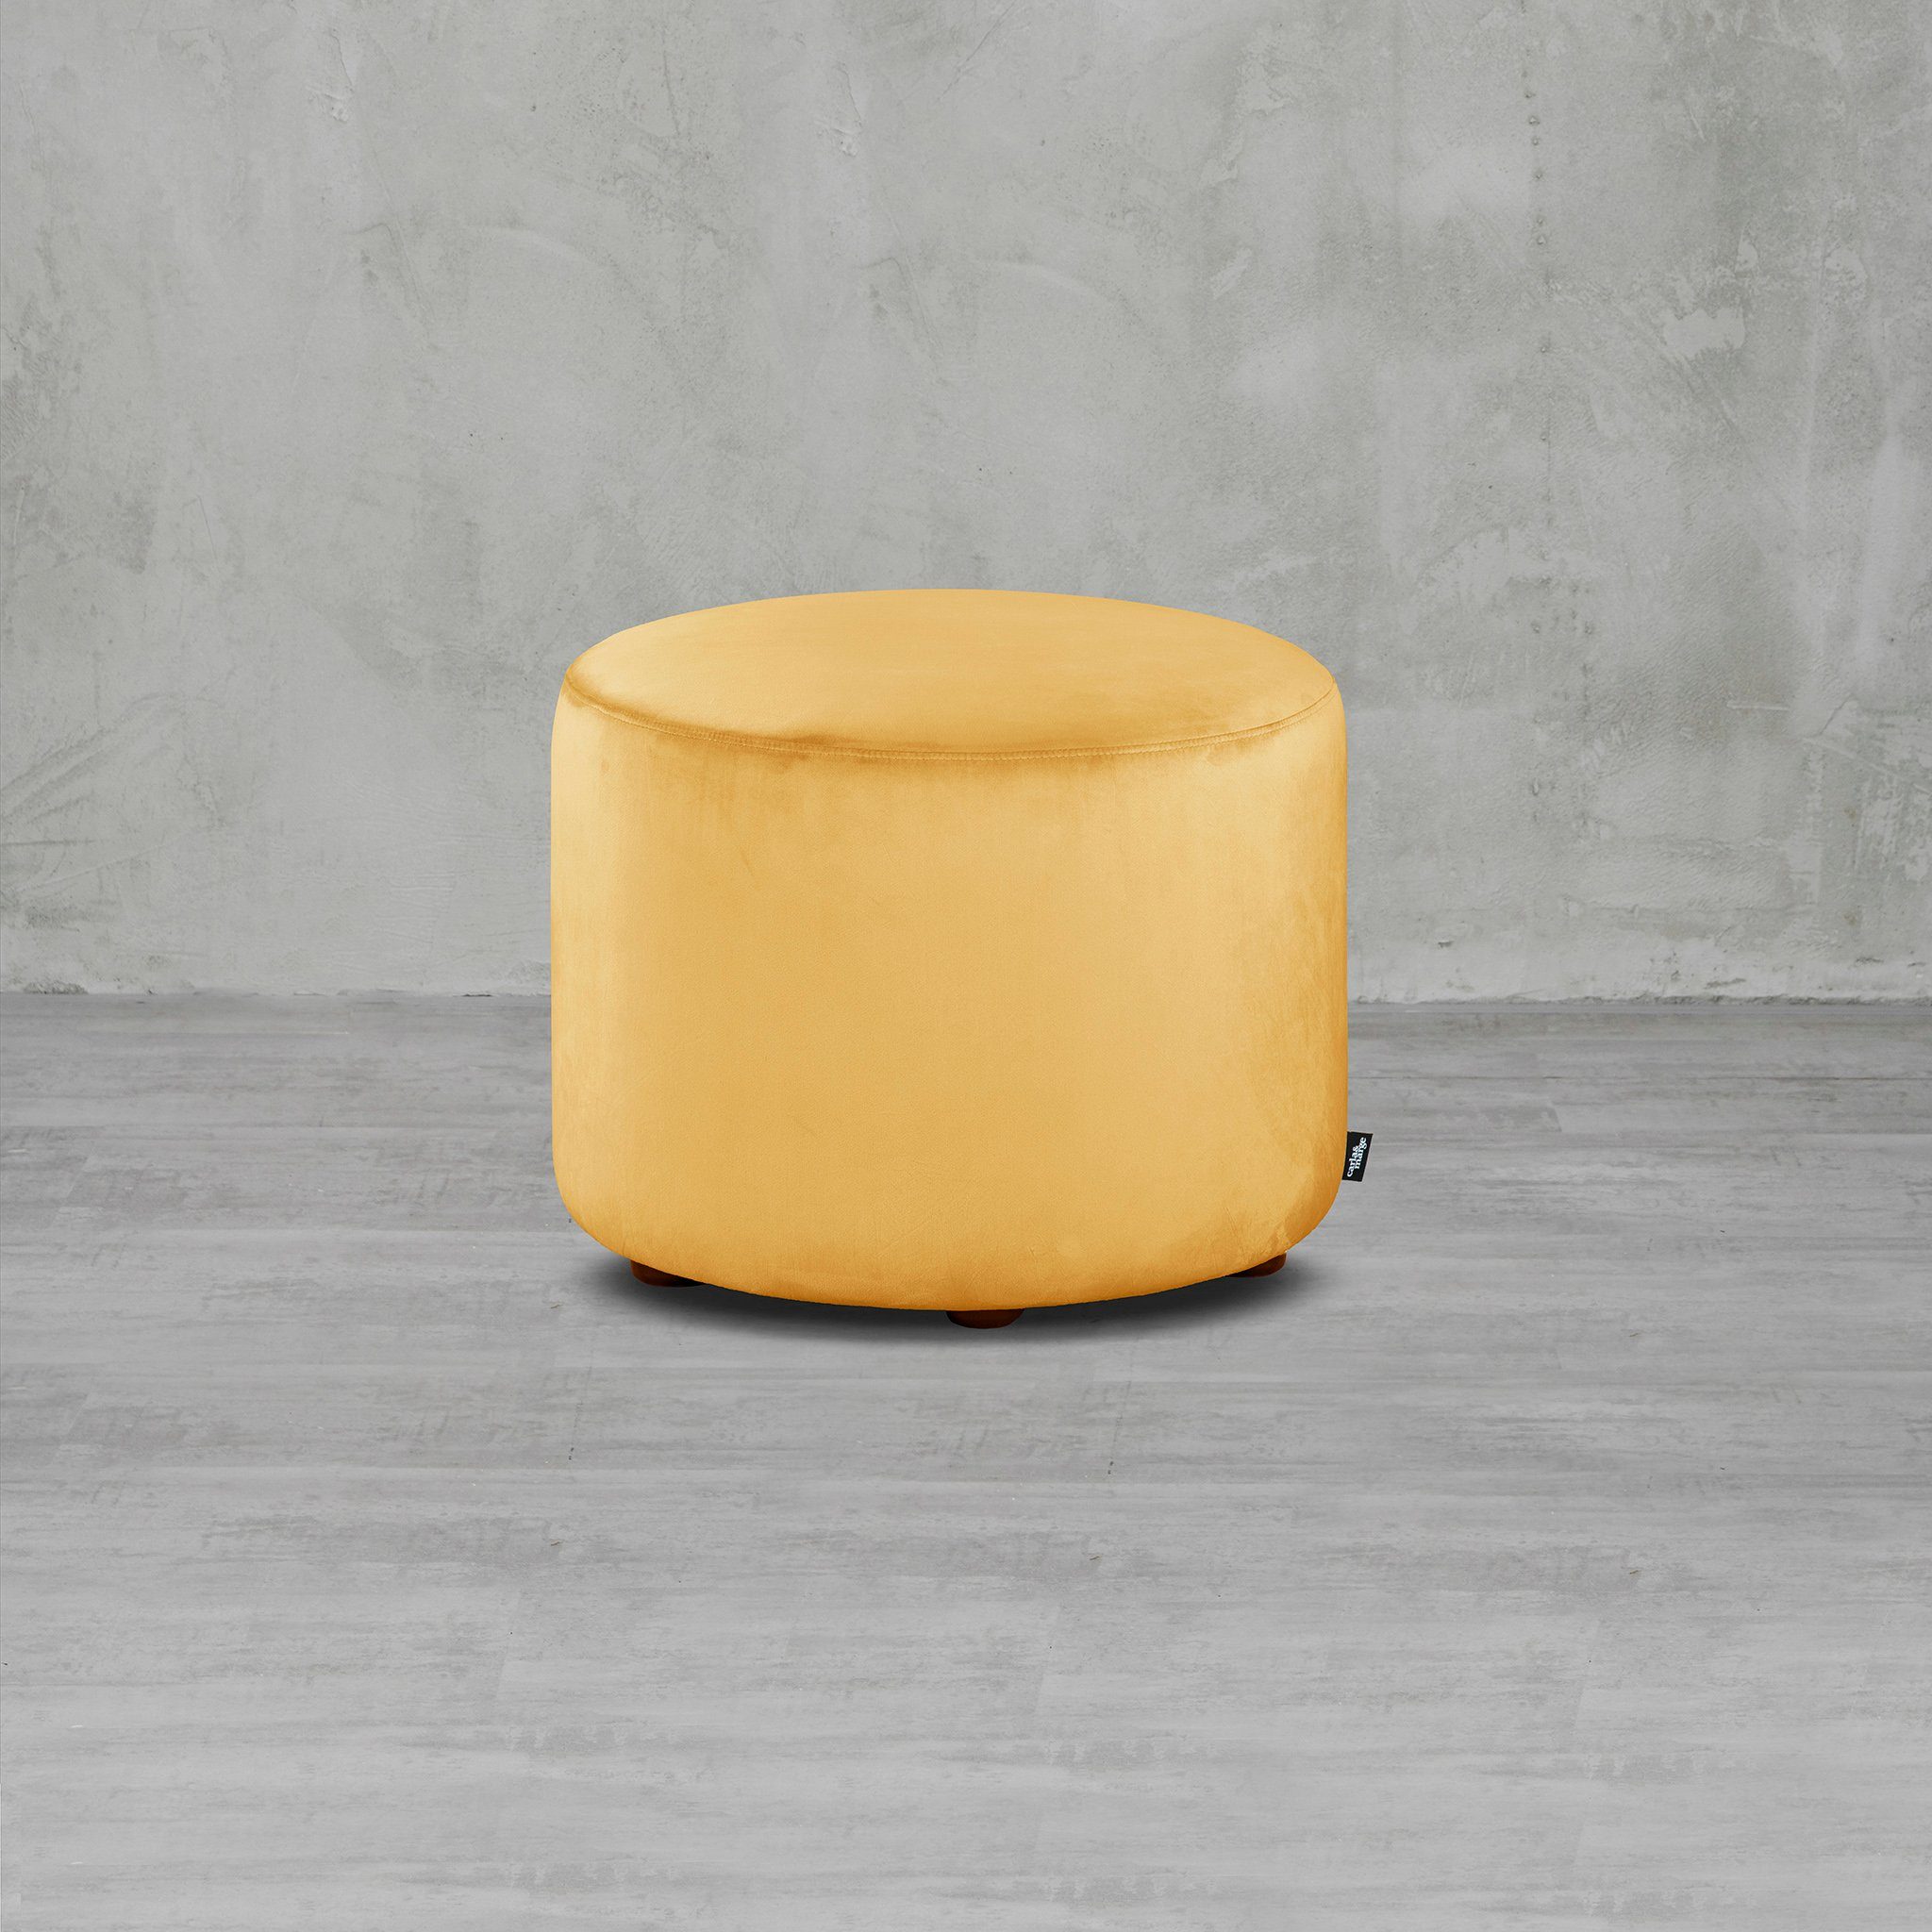 carla&marge Pouf Epomella (47x55x55 cm), Sitzhocker mit schmuseweichem Samtbezug in Gelb Mustard Yellow